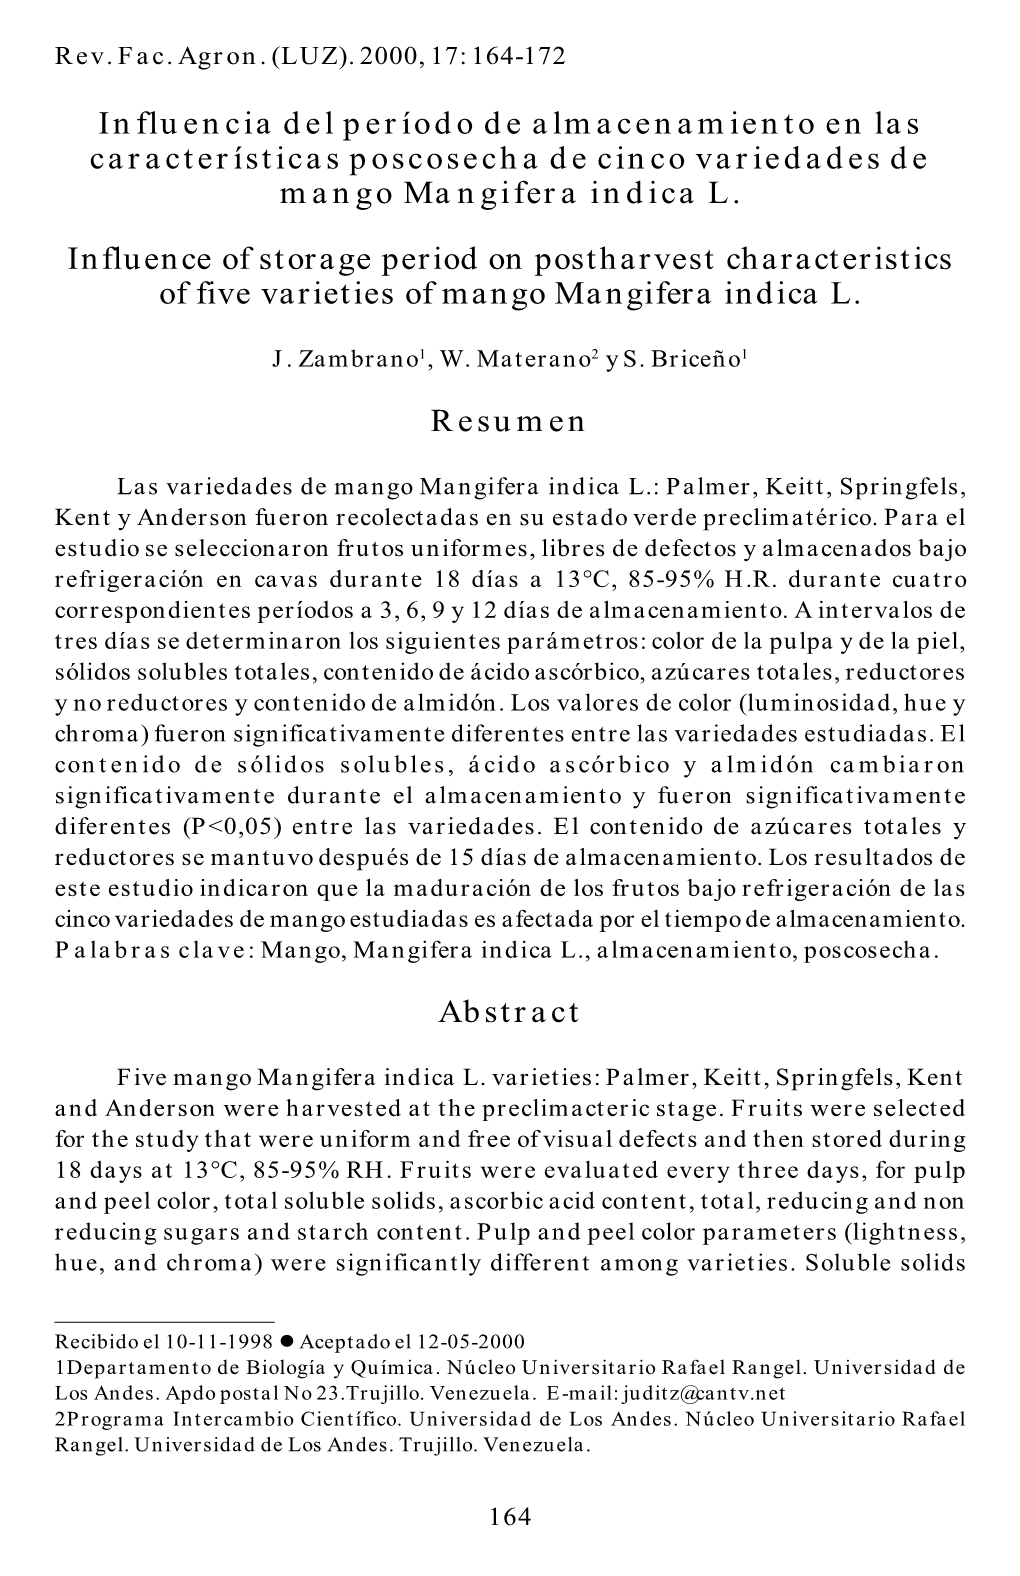 Influencia Del Período De Almacenamiento En Las Características Poscosecha De Cinco Variedades De Mango Mangifera Indica L